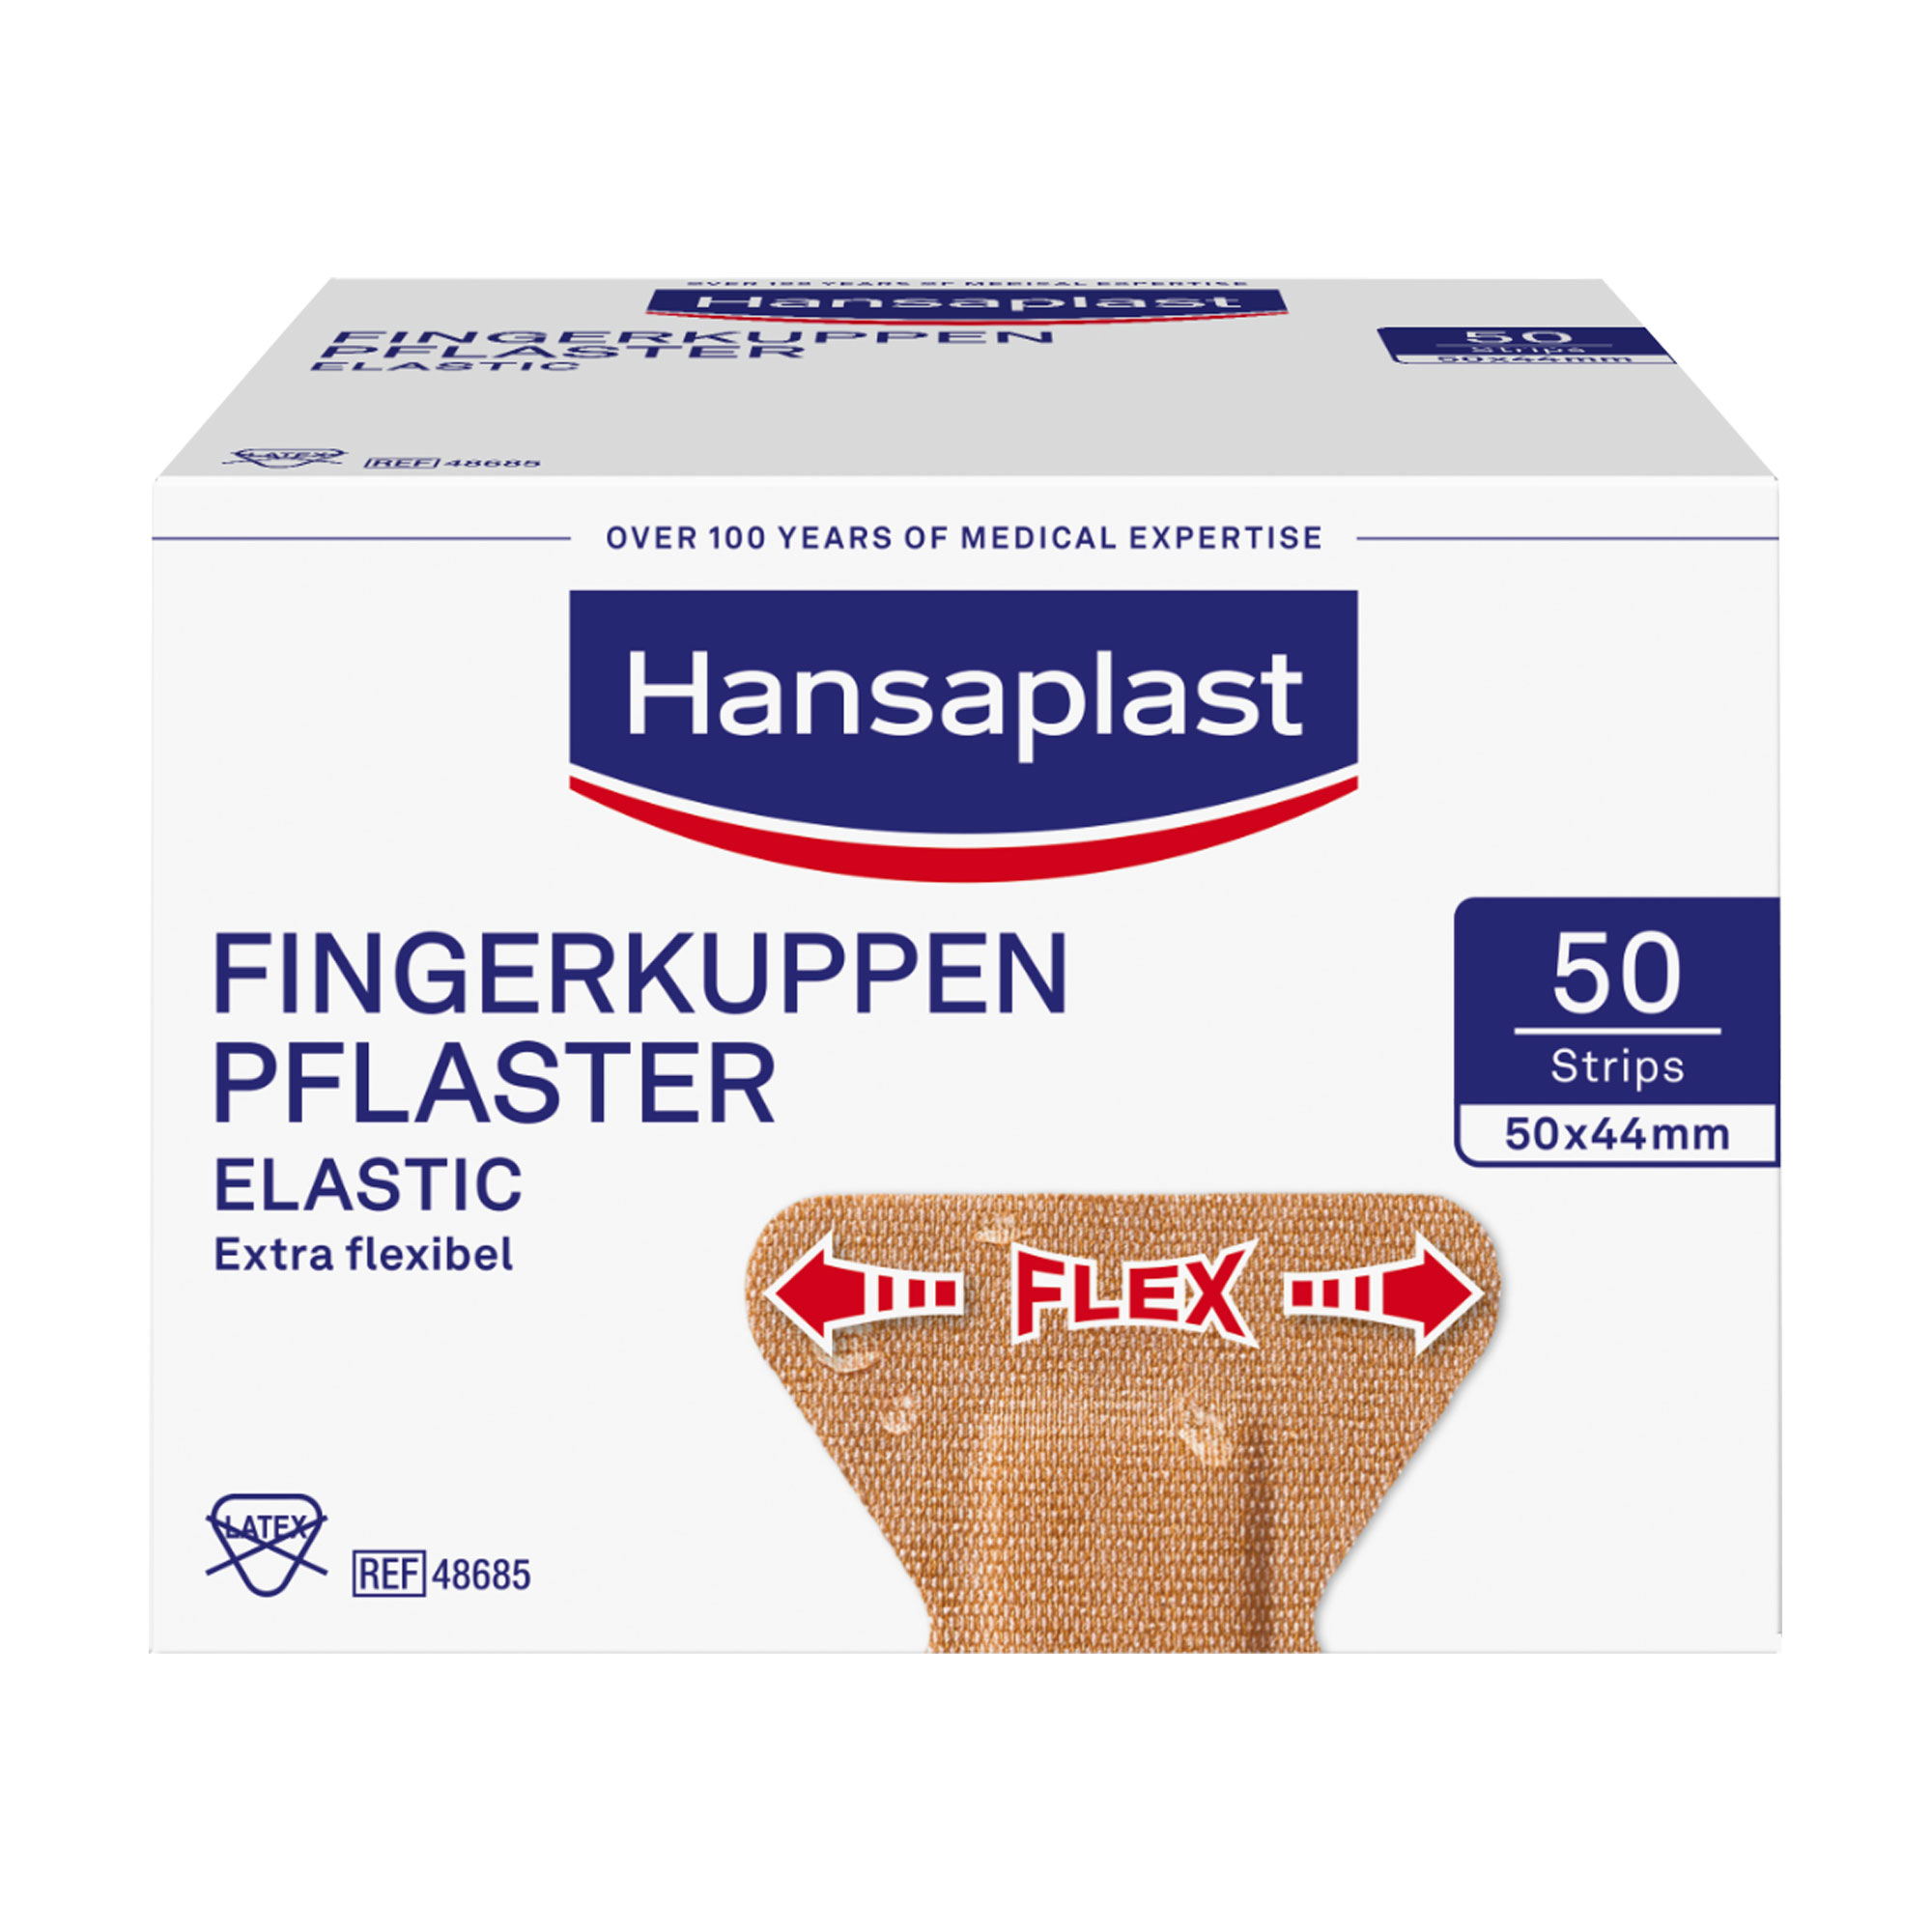 Flexible und wasserabweisende Fingerkuppenpflaster zur Versorgung und zum Schutz kleiner Wunden am Finger.